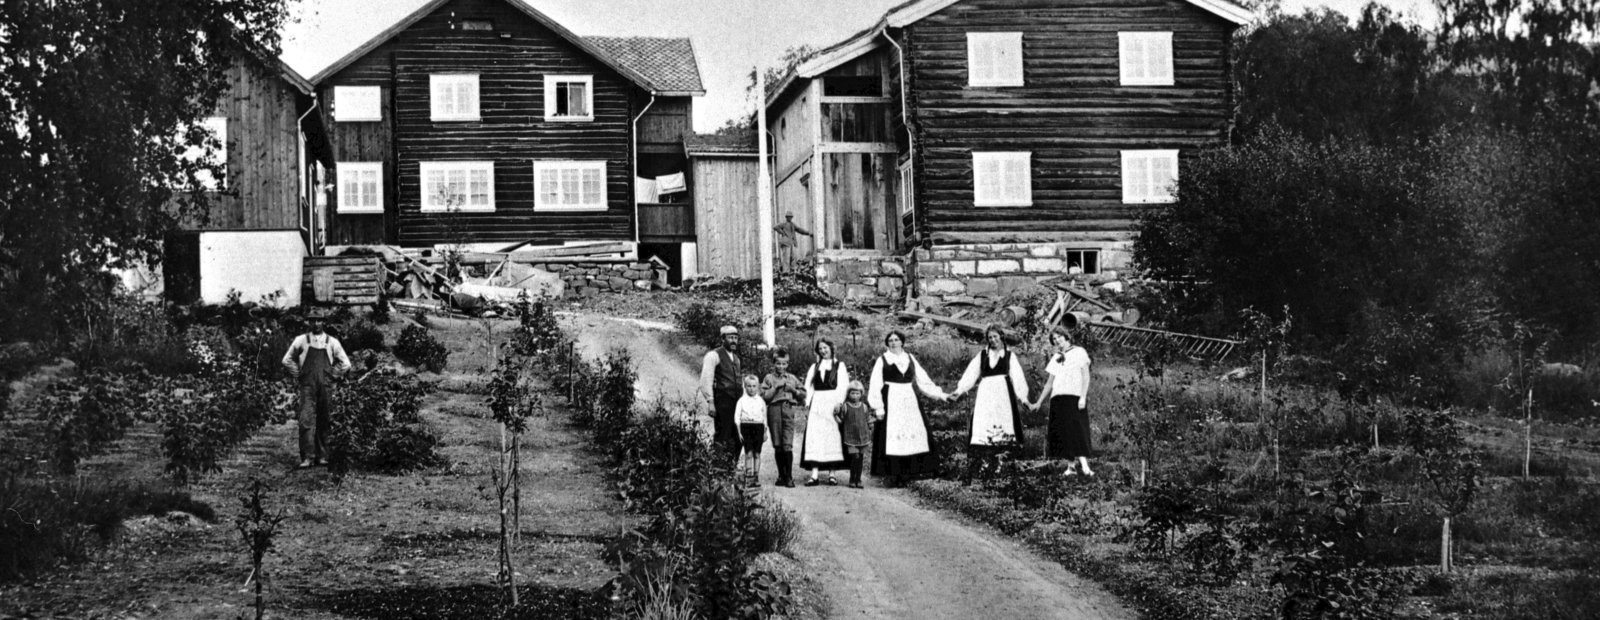  Bjerkebæk Sigrid Undsets hjem, 1926-27 